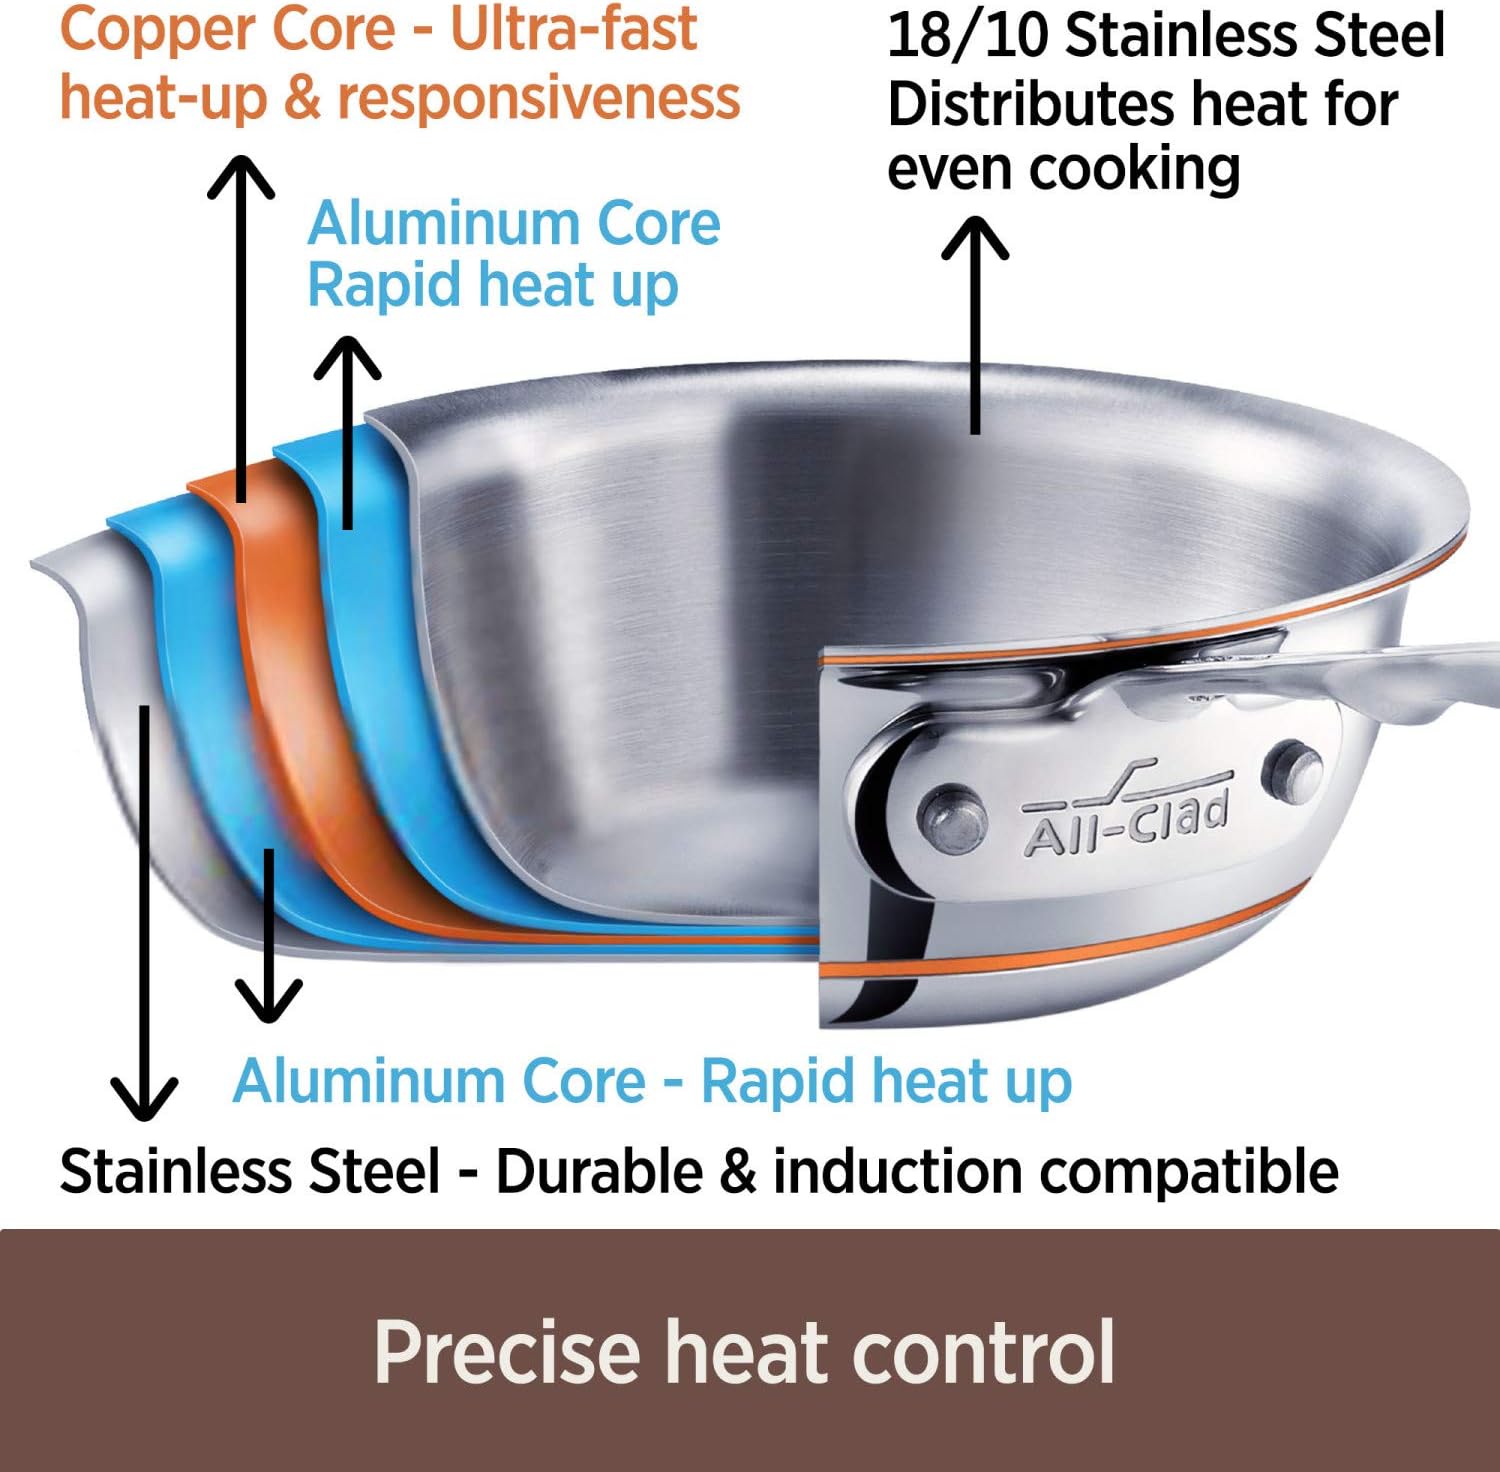 All-Clad Copper Core 5-Quart Copper Core Saute Pan with Lid